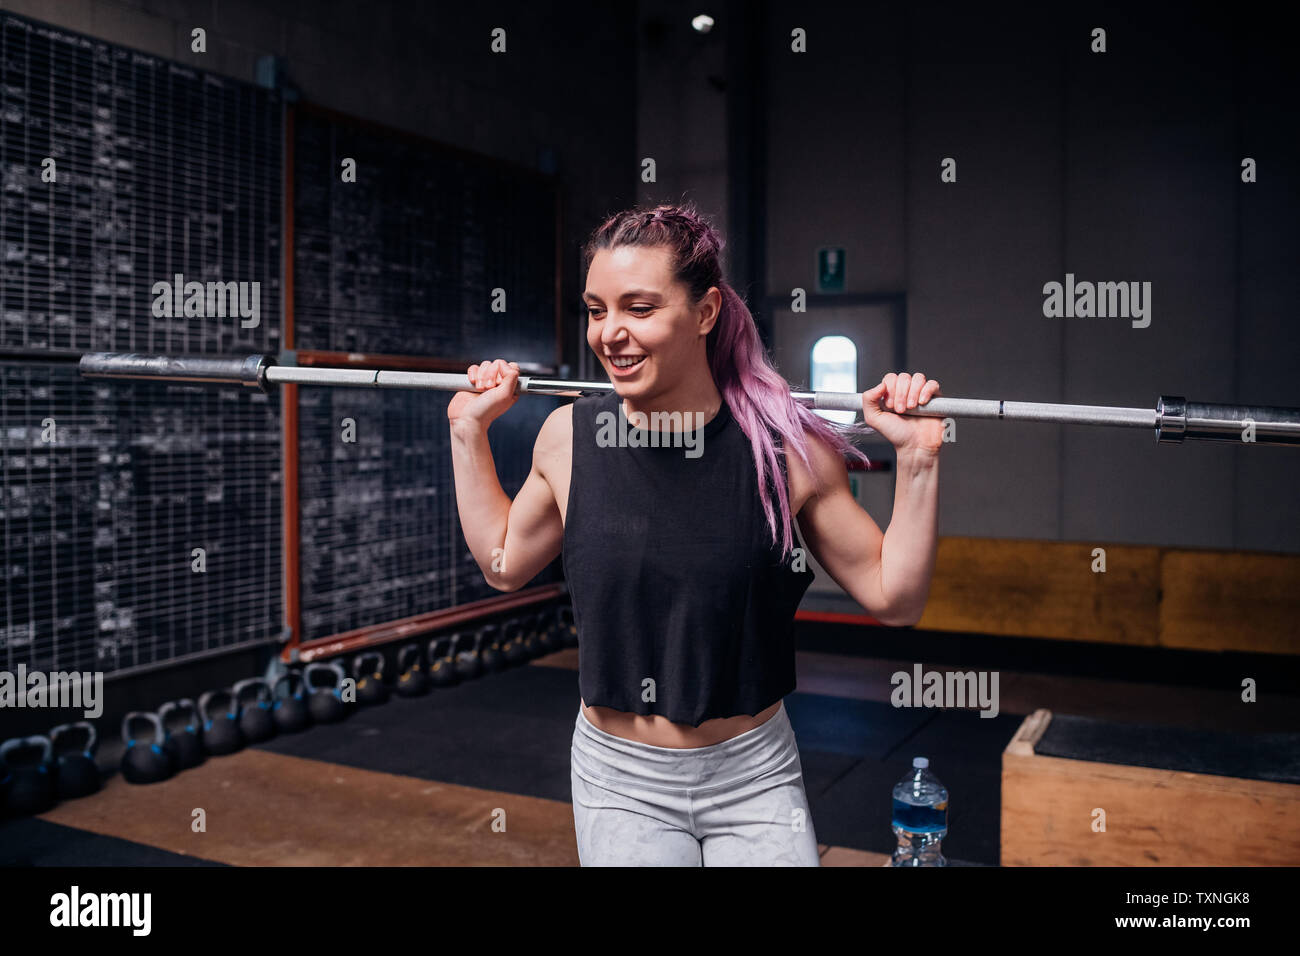 Junge Frau heben Gewicht bar in der Turnhalle Stockfoto